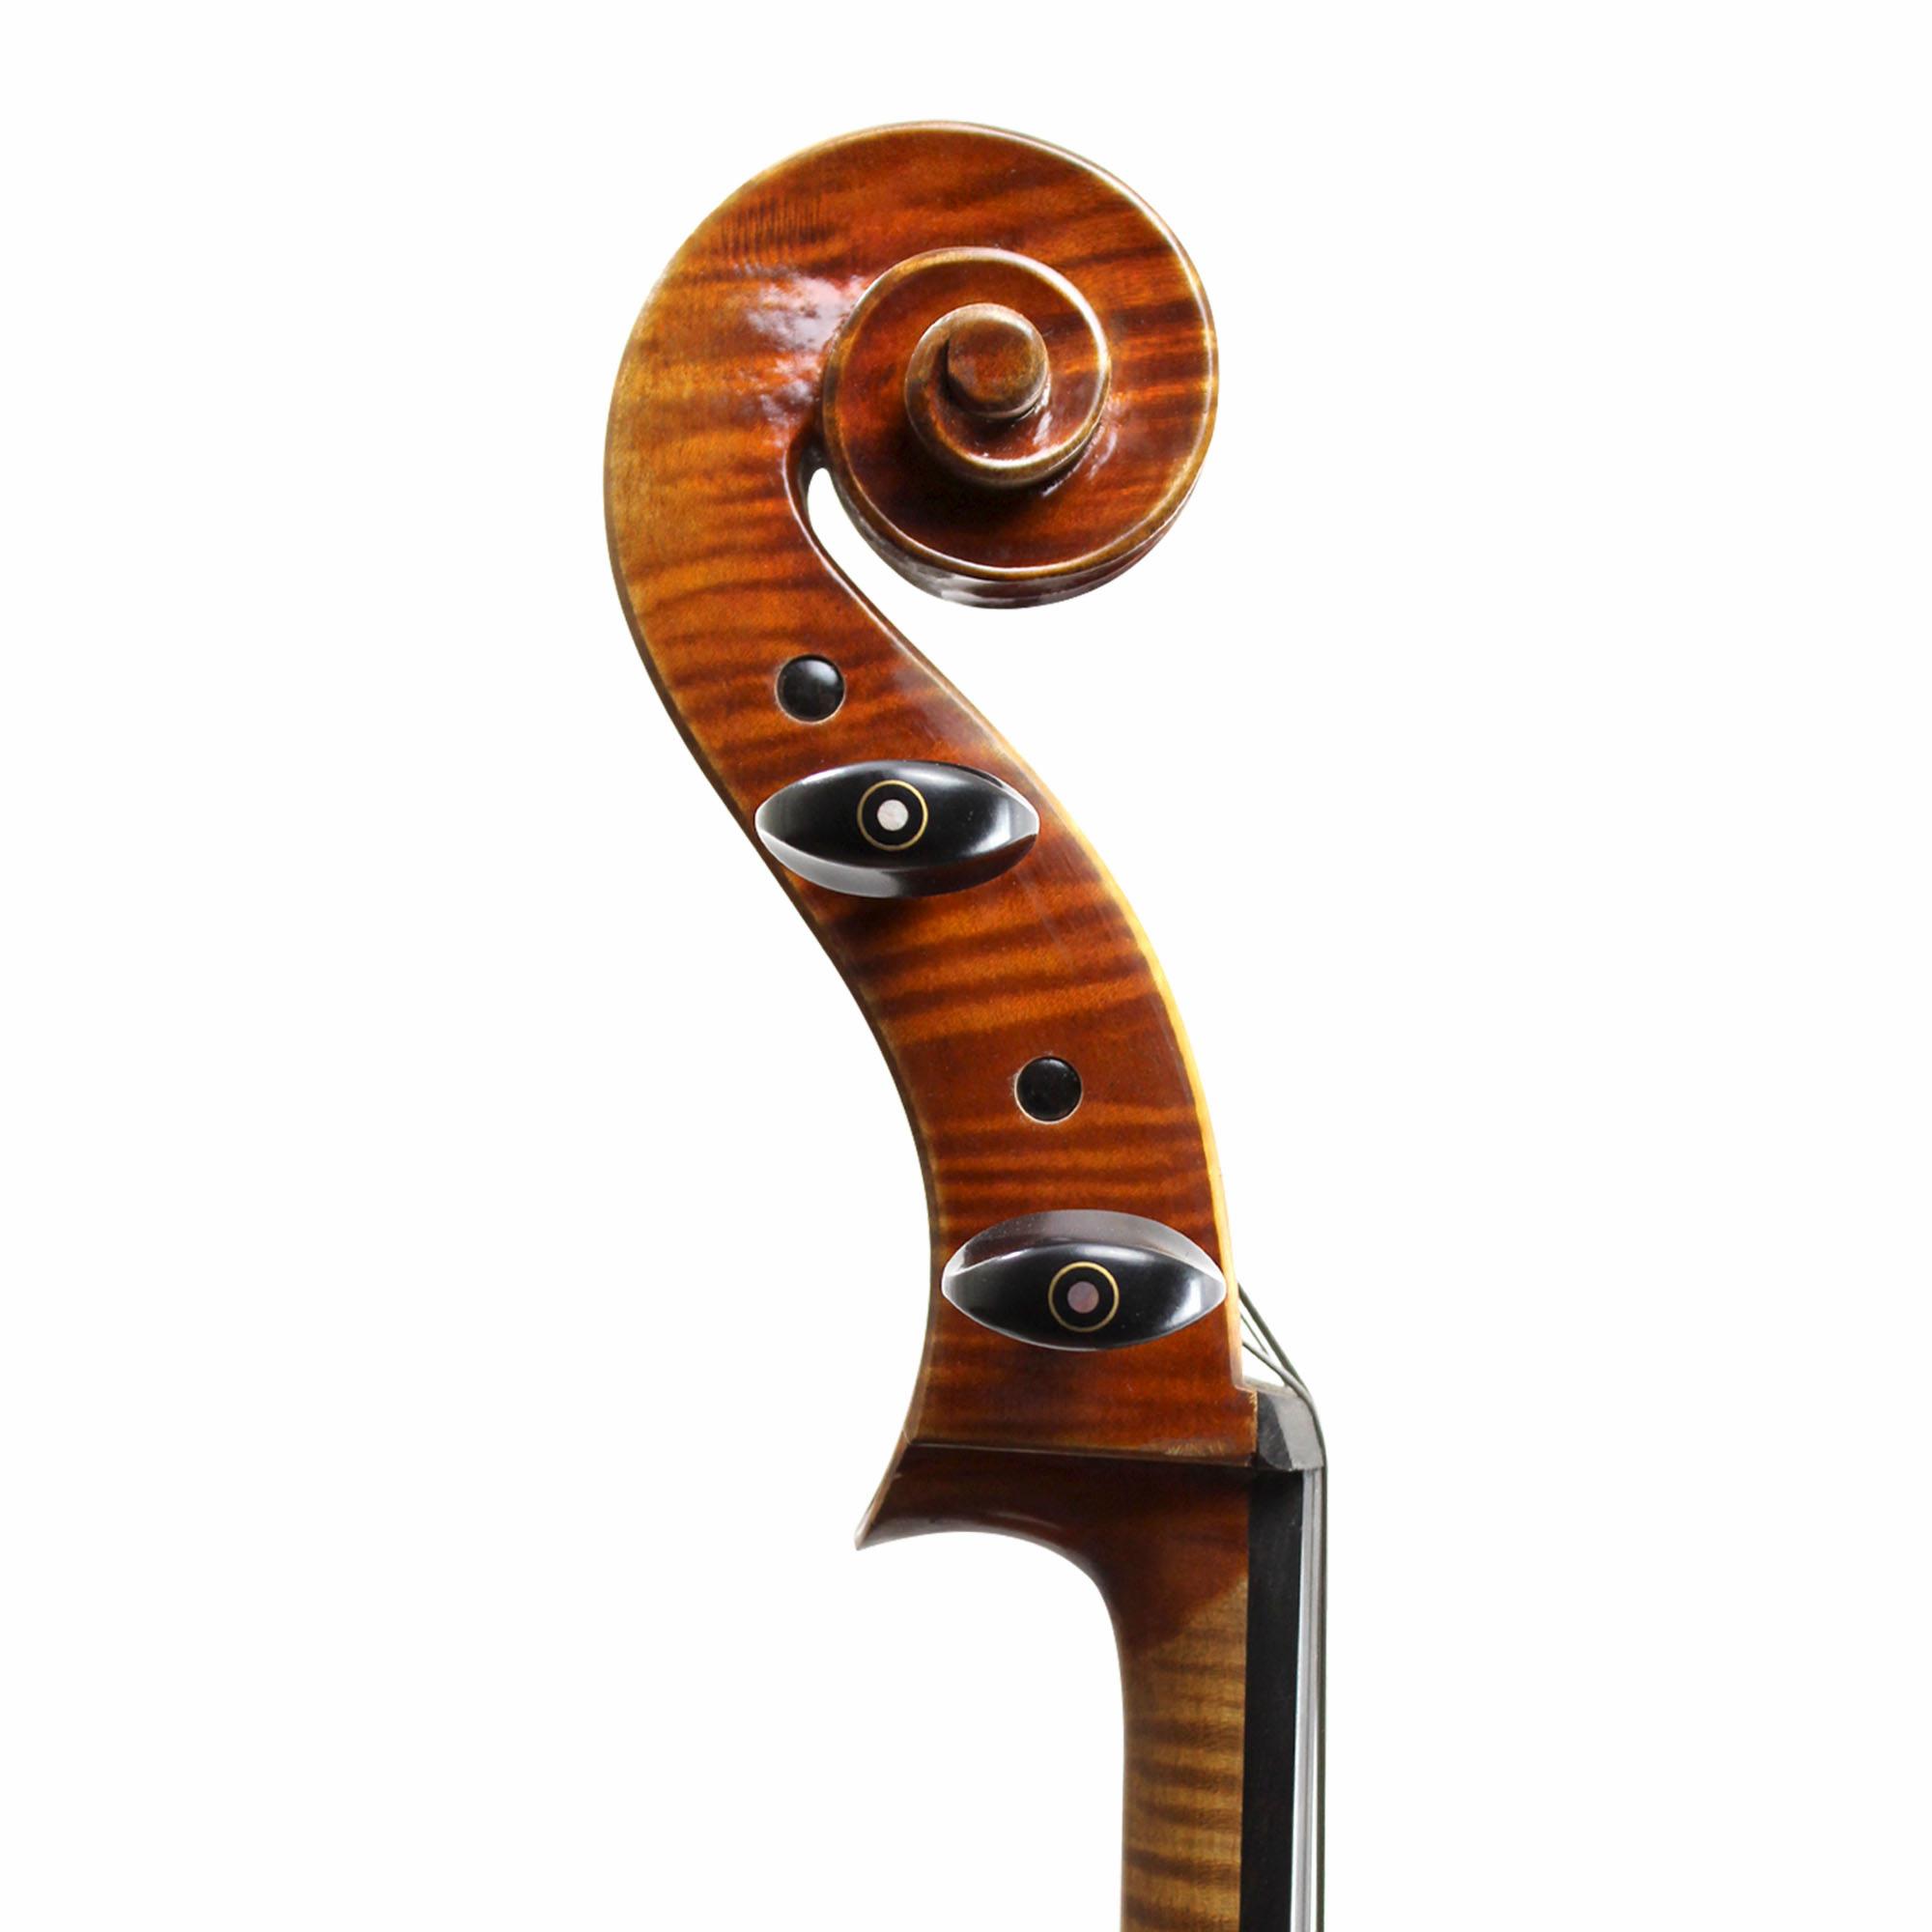 Yuan Qin Master Cello